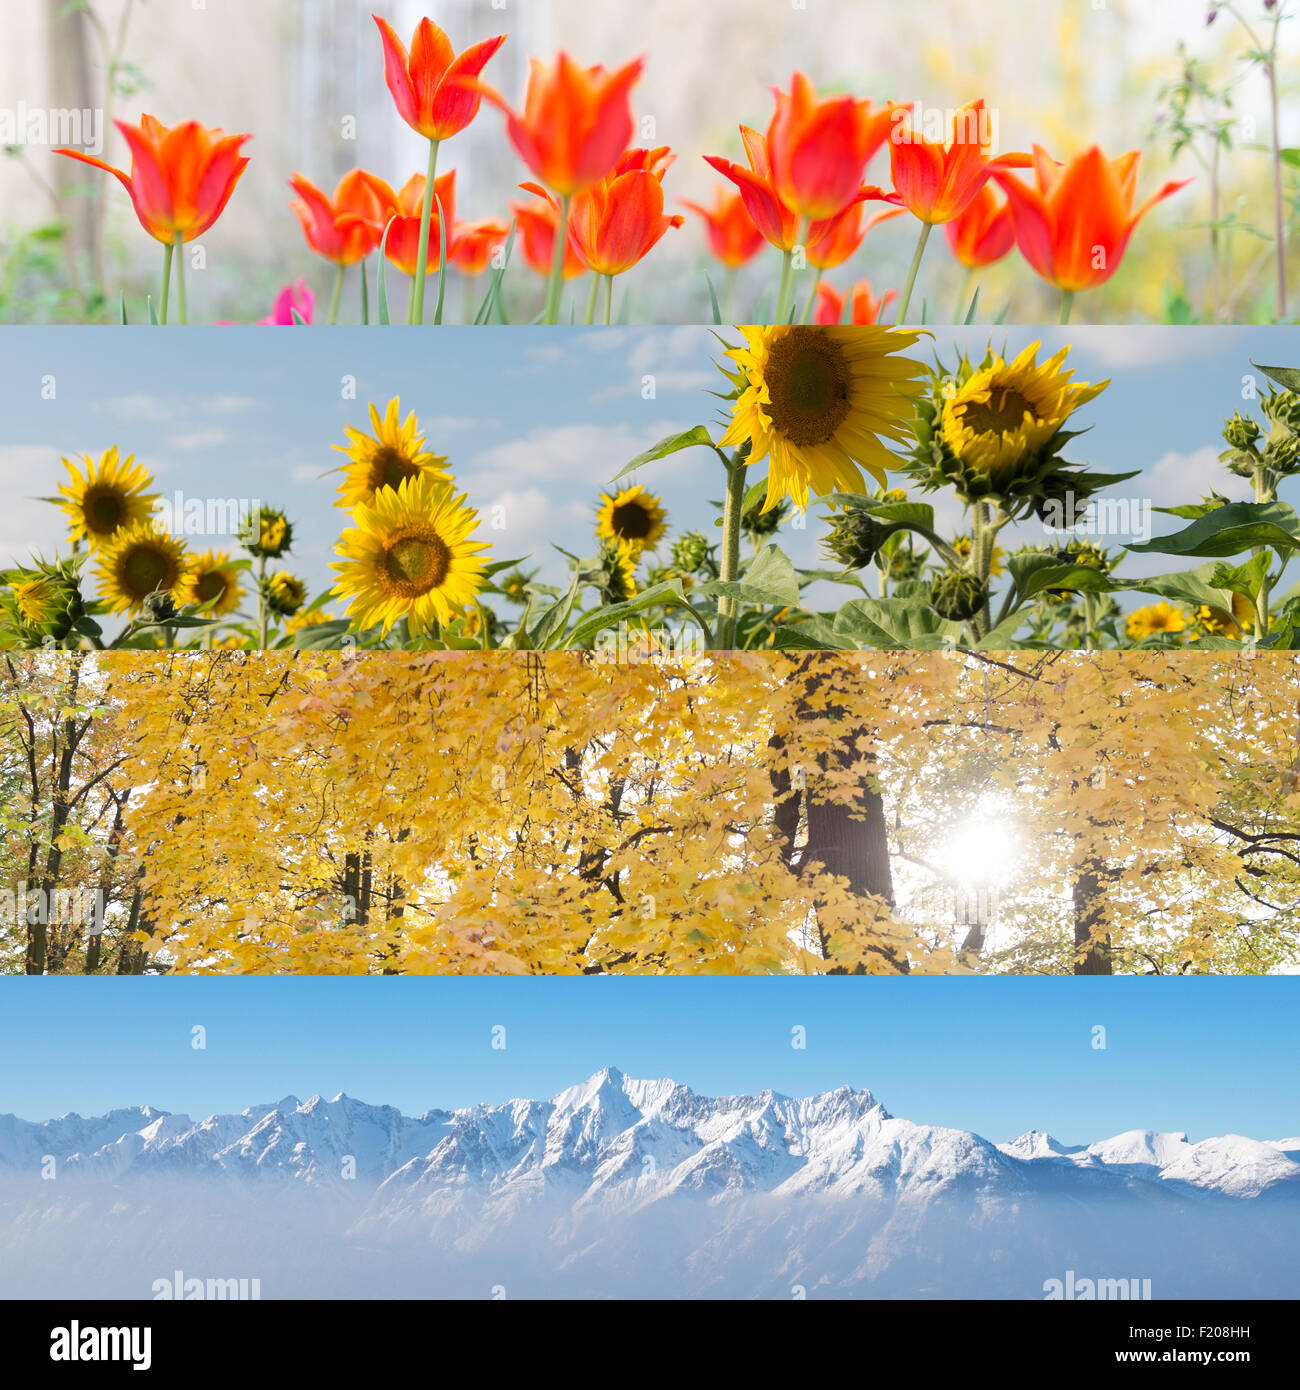 vier Jahreszeiten in einem Bild Stock Photo